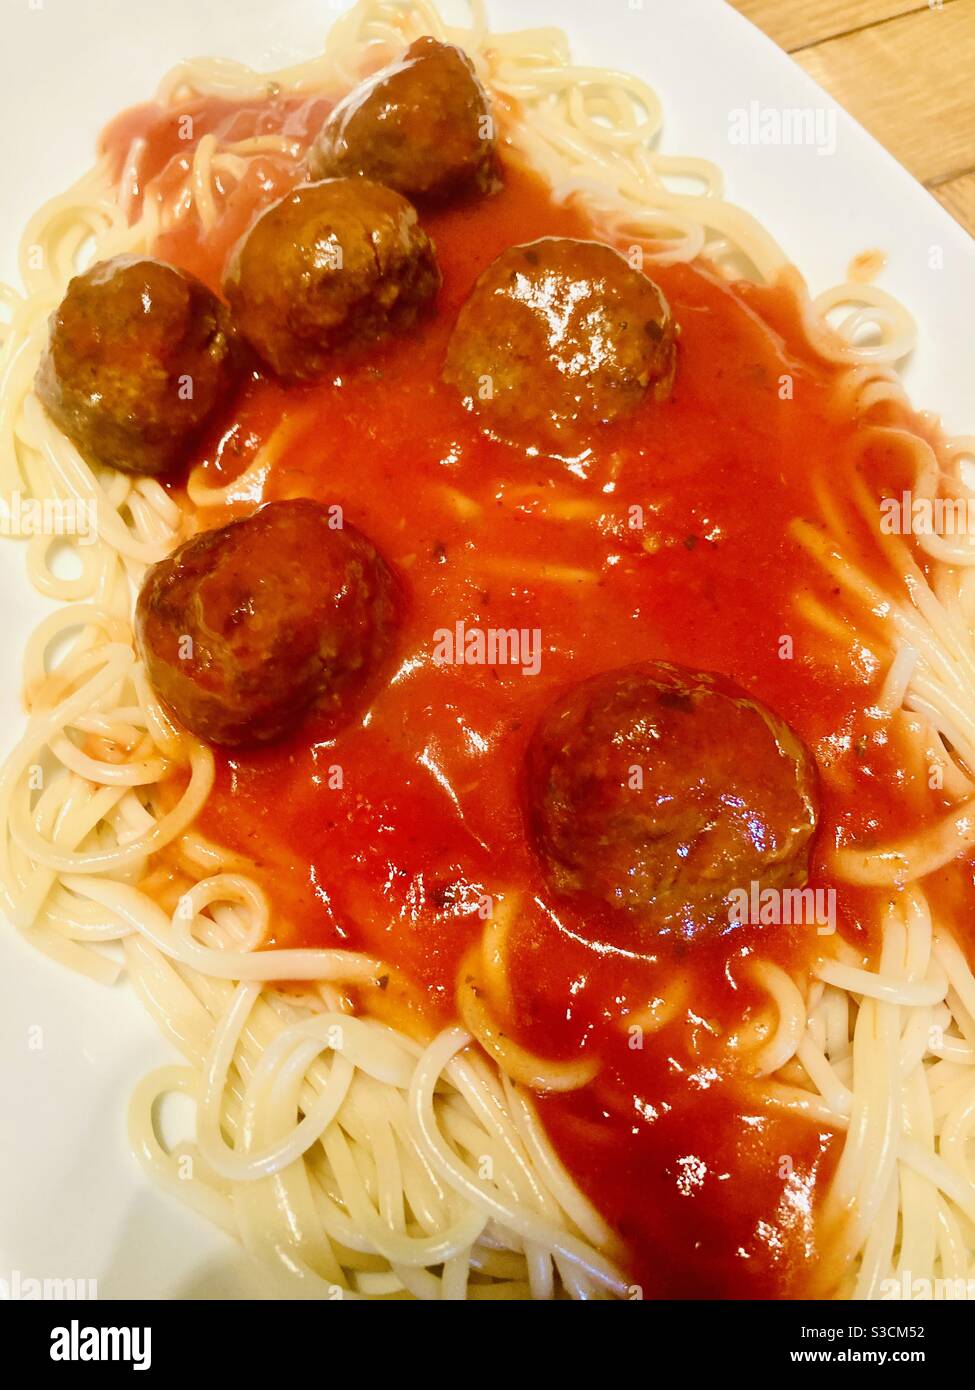 Spaghetti et boulettes de viande dans une riche sauce tomate Banque D'Images